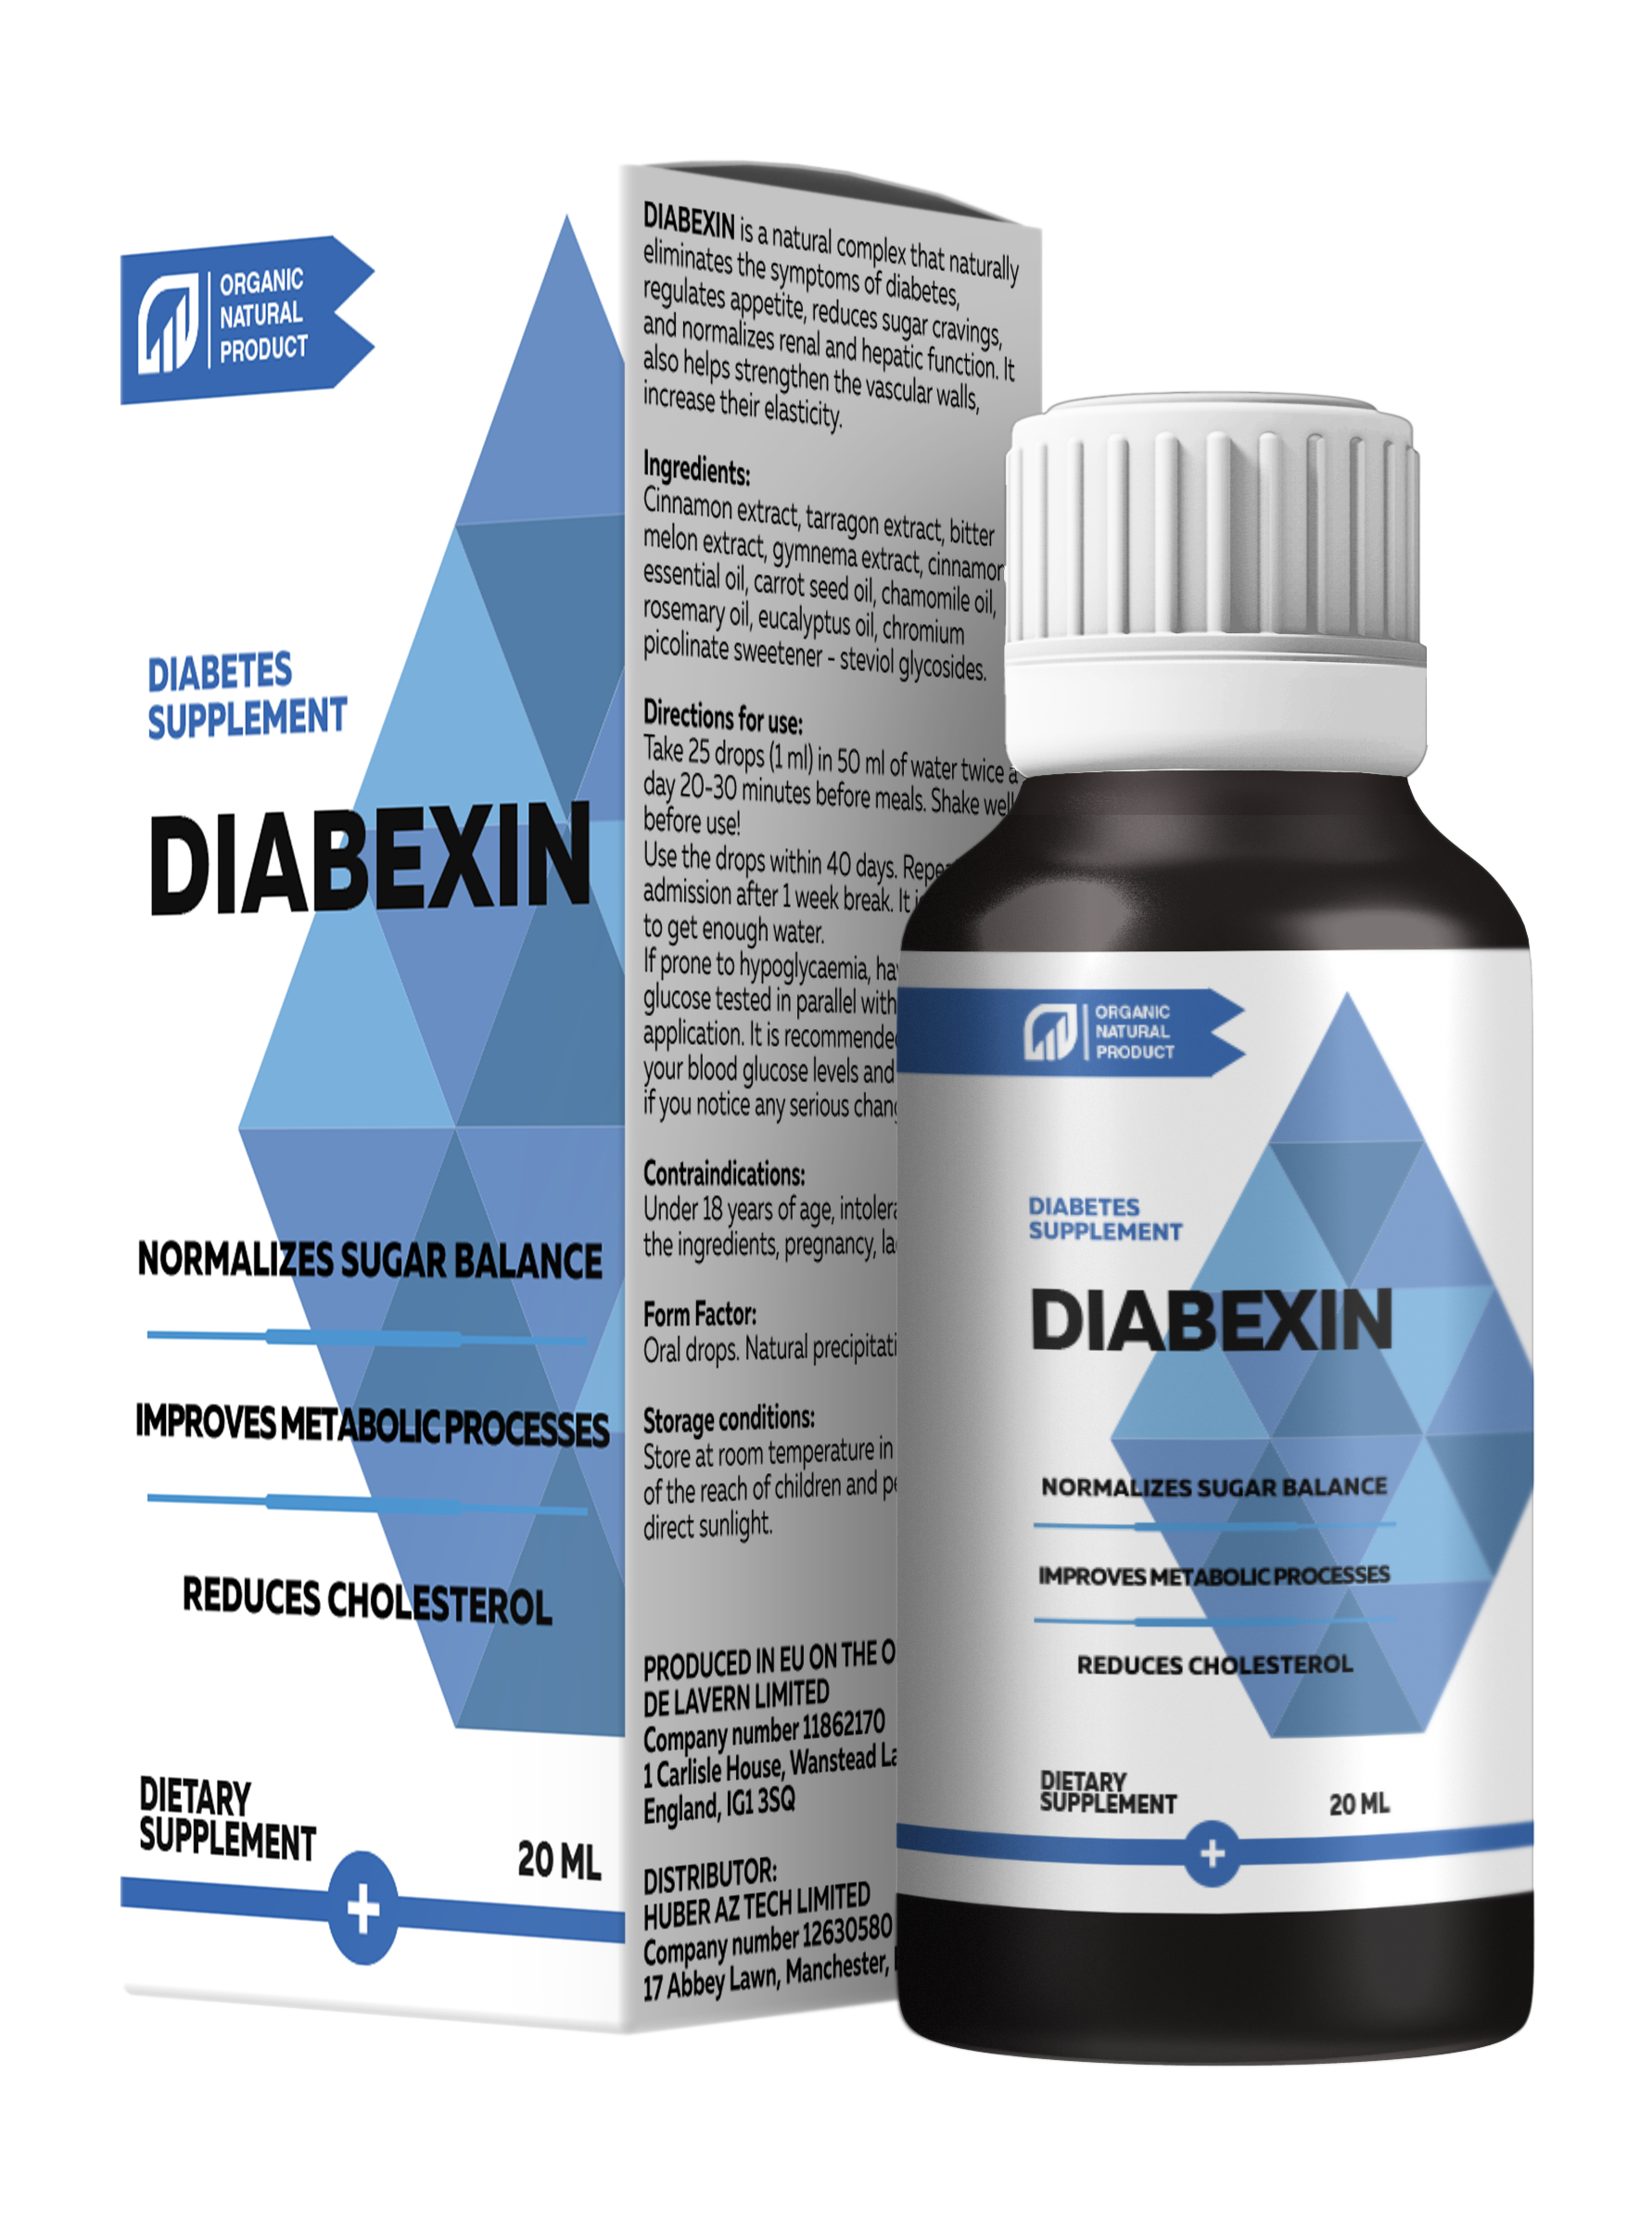 Diabexin - termék áttekintés